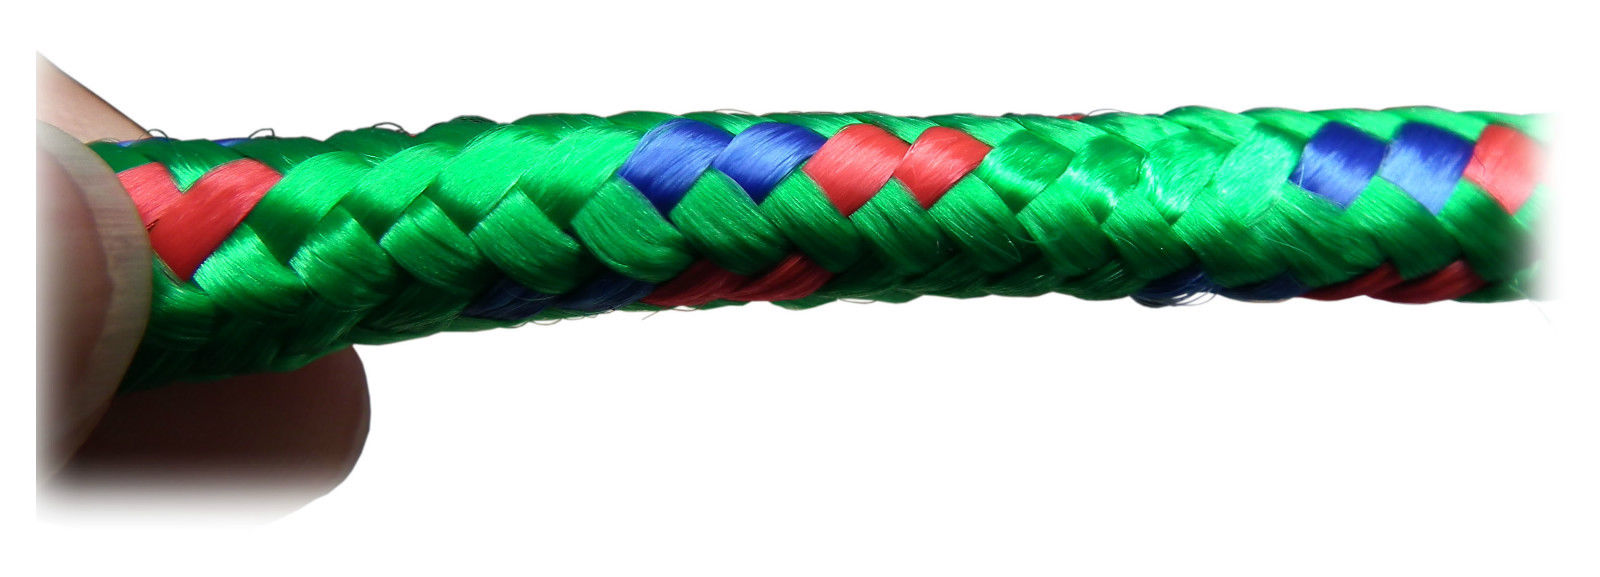 Polypropylene Rope 30M - Red